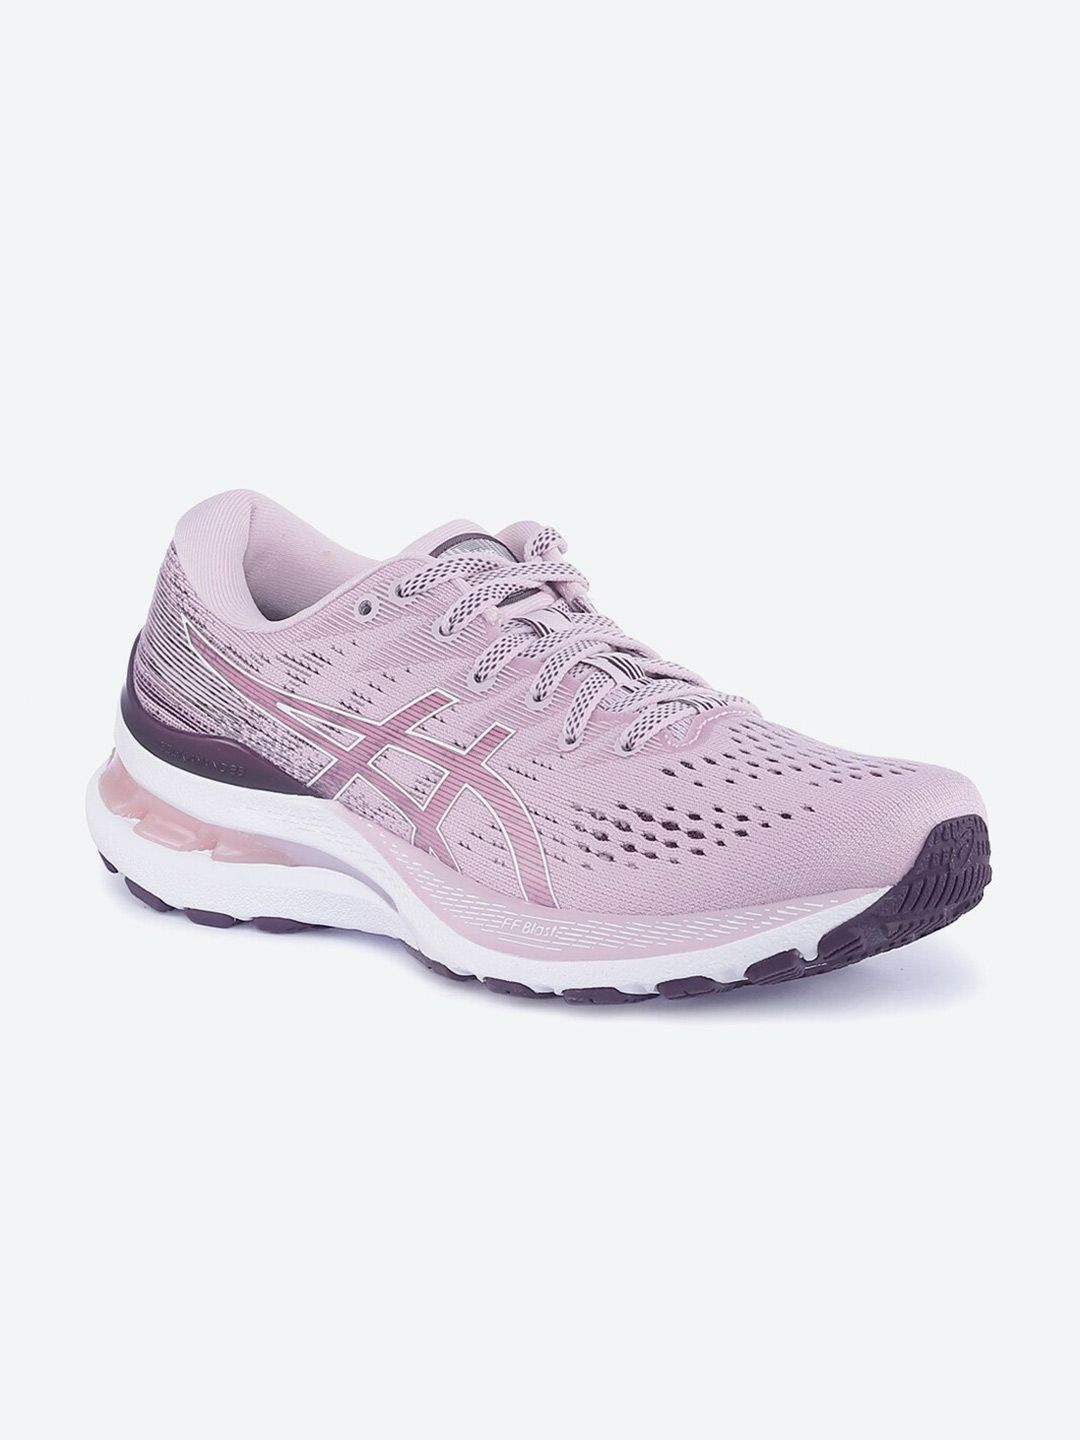 ASICS Women Pink Running Non-Marking Shoes GEL-Kayano 28 Price in India